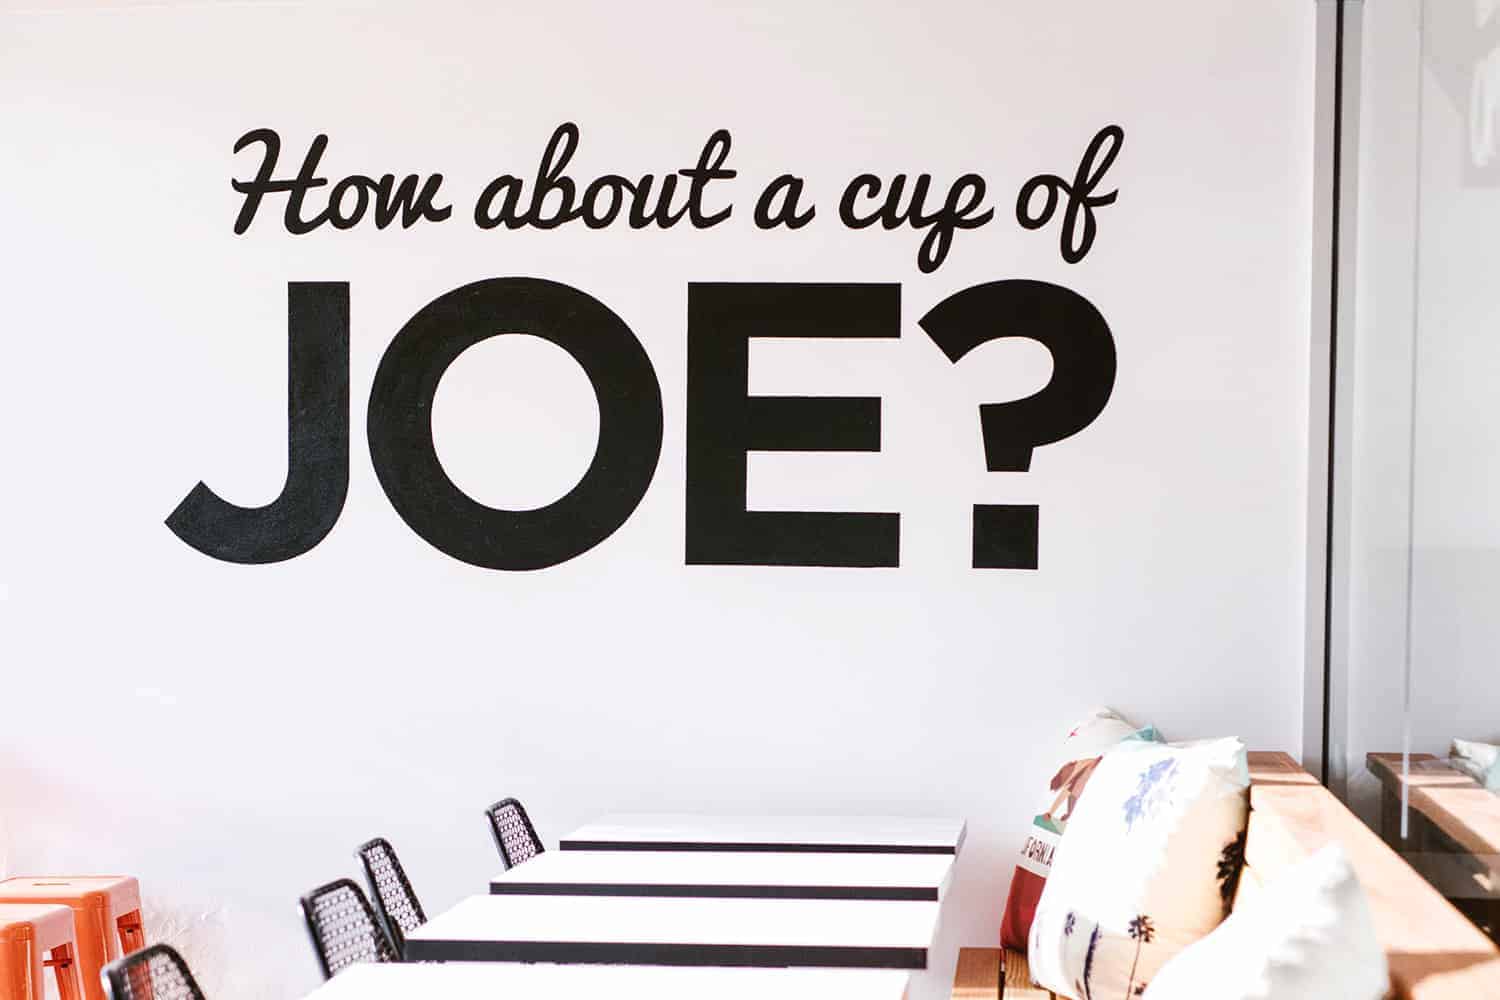 모닝커피 한잔 cup of joe